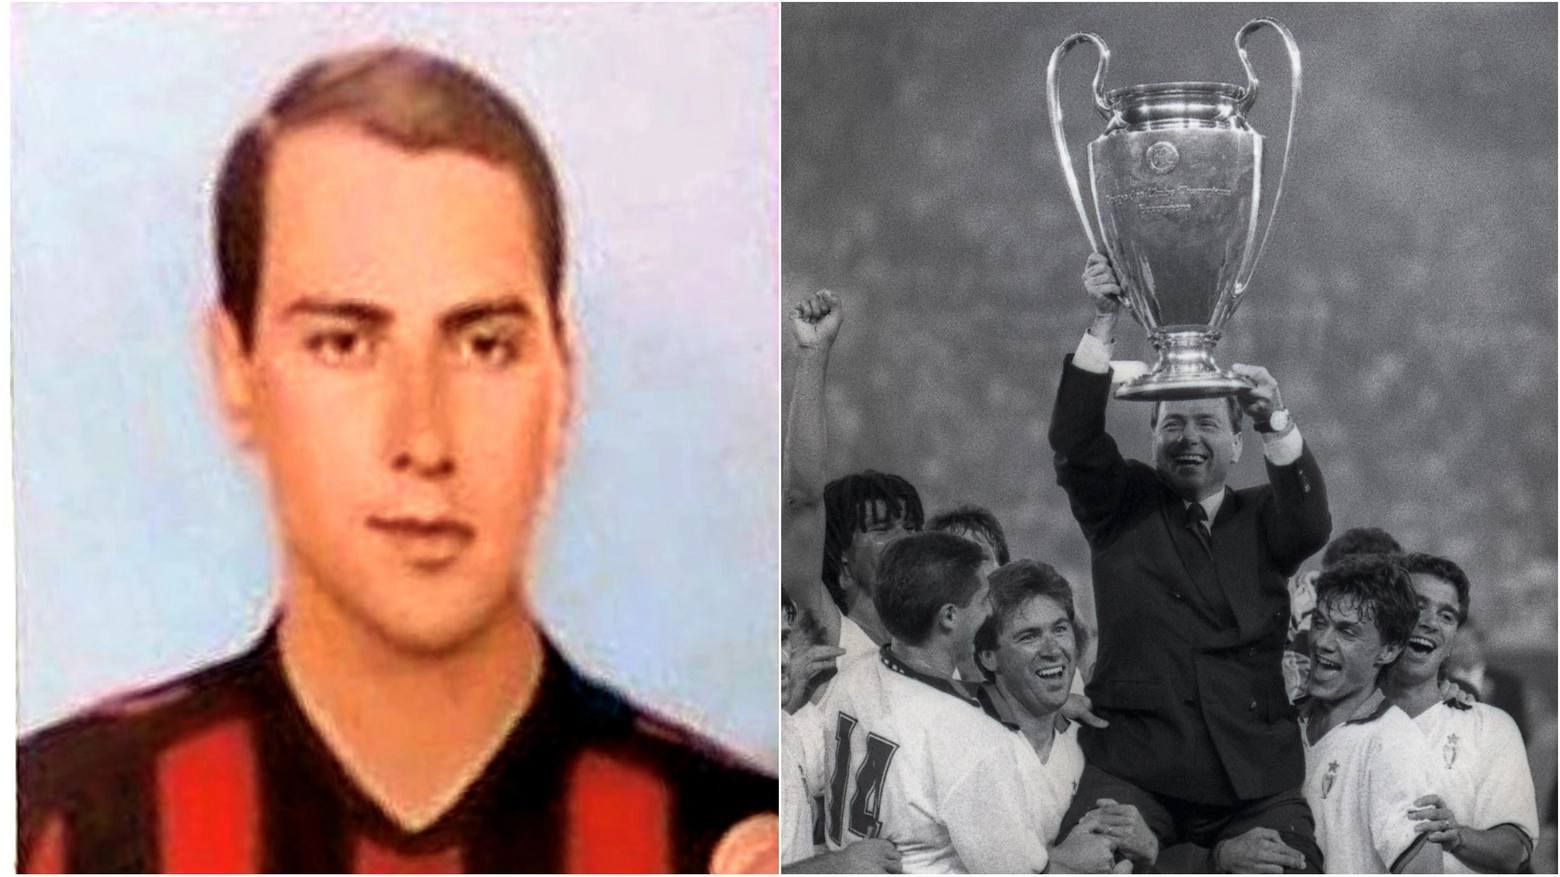 Un giovanissimo Silvio Berlusconi con la maglia del Milan e mentre festeggia la Coppa dei Campioni